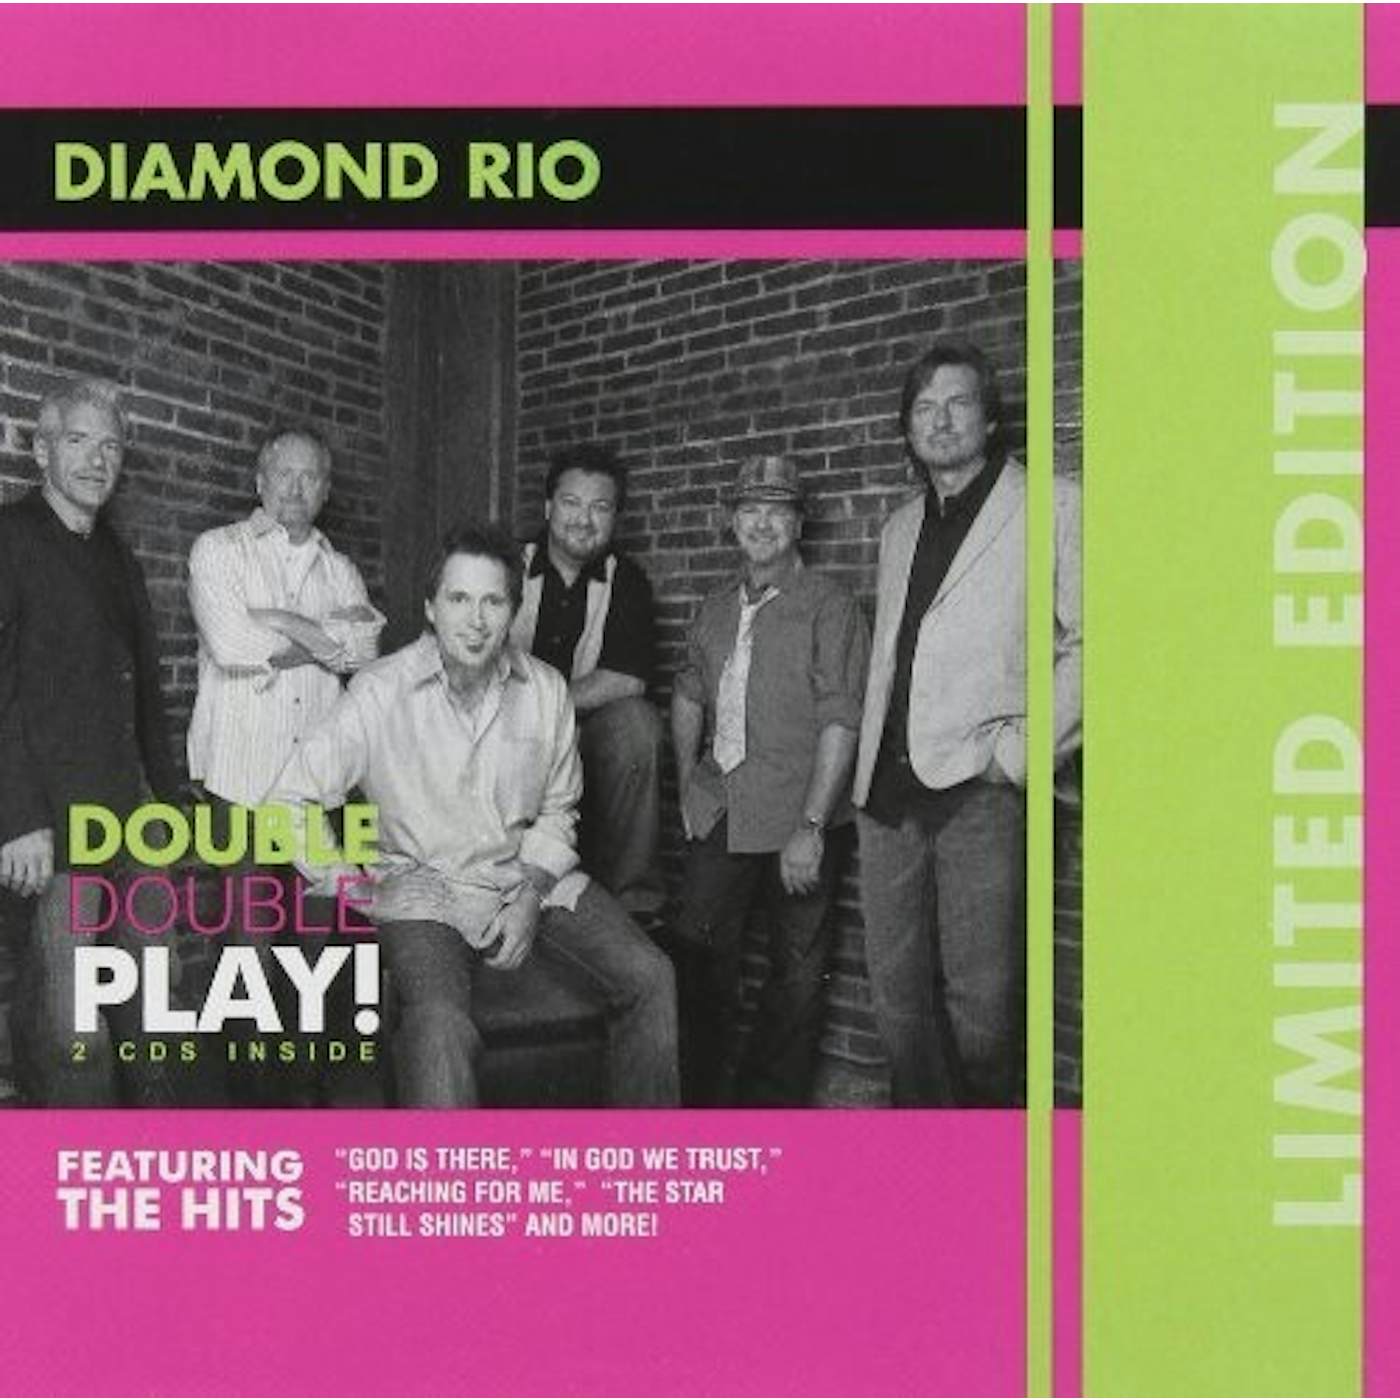 Diamond Rio REASON / STAR STILL SHINES CD